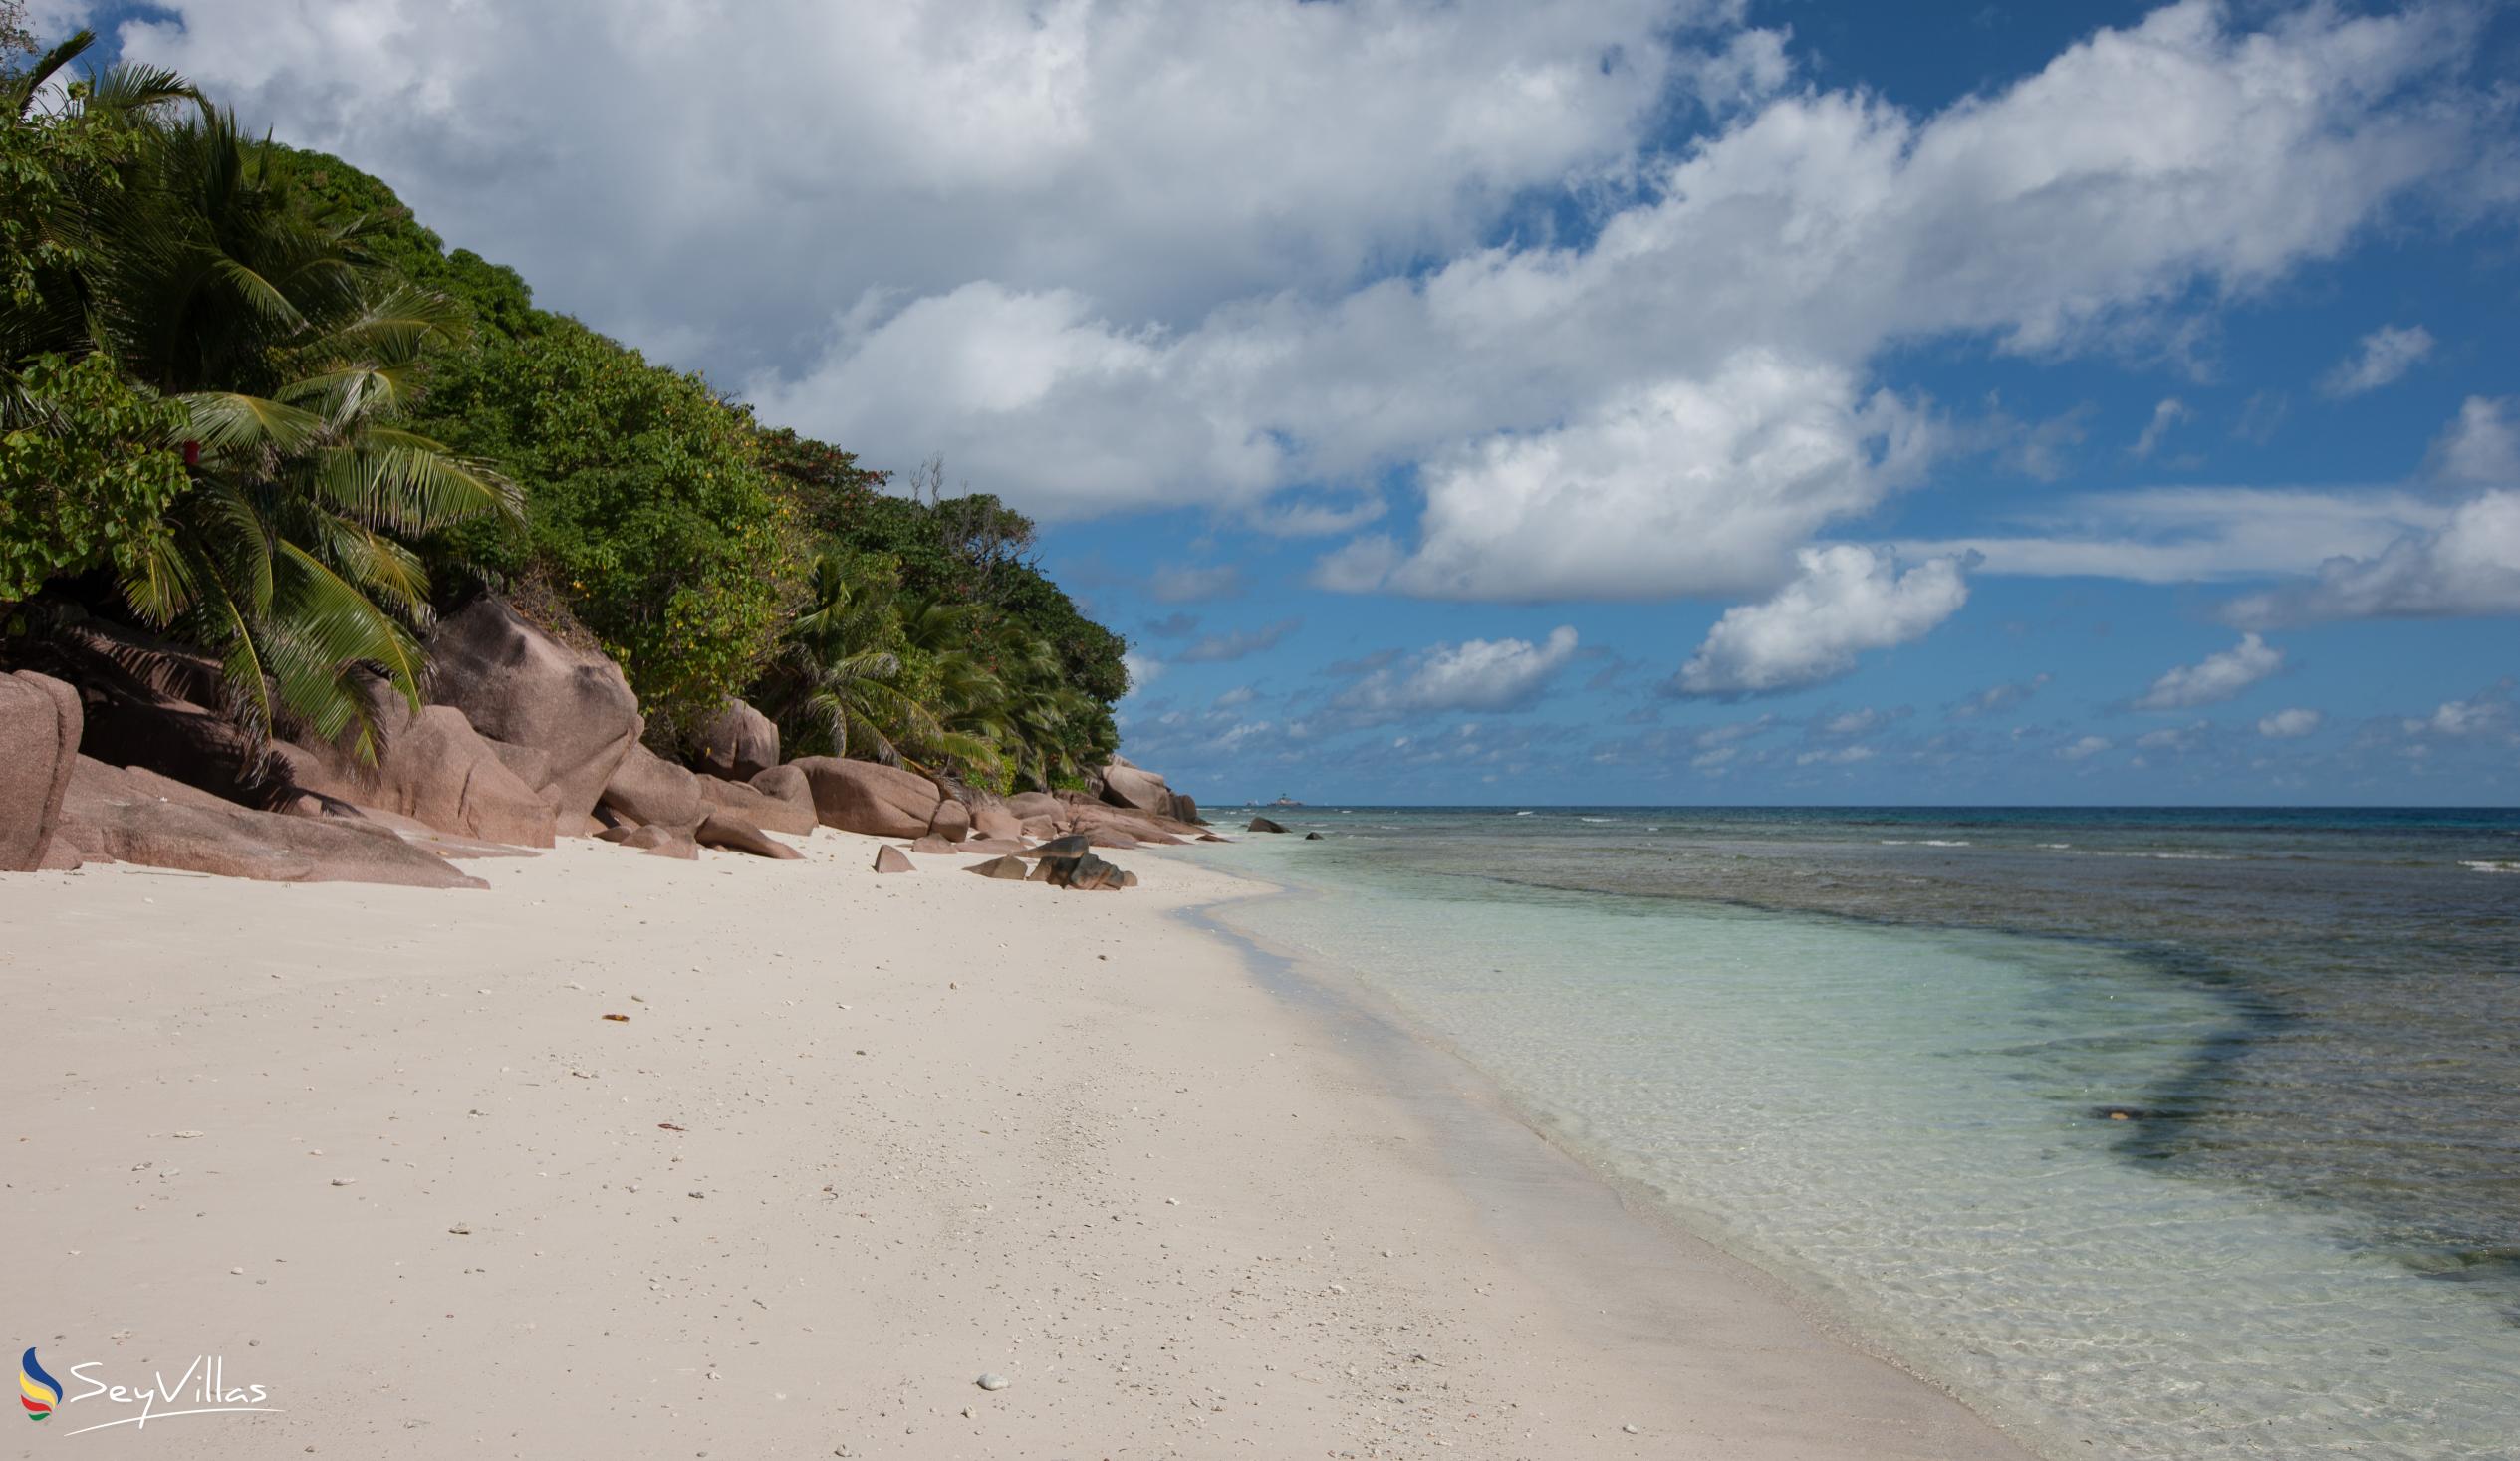 Photo 5: Anse Gaulettes - La Digue (Seychelles)